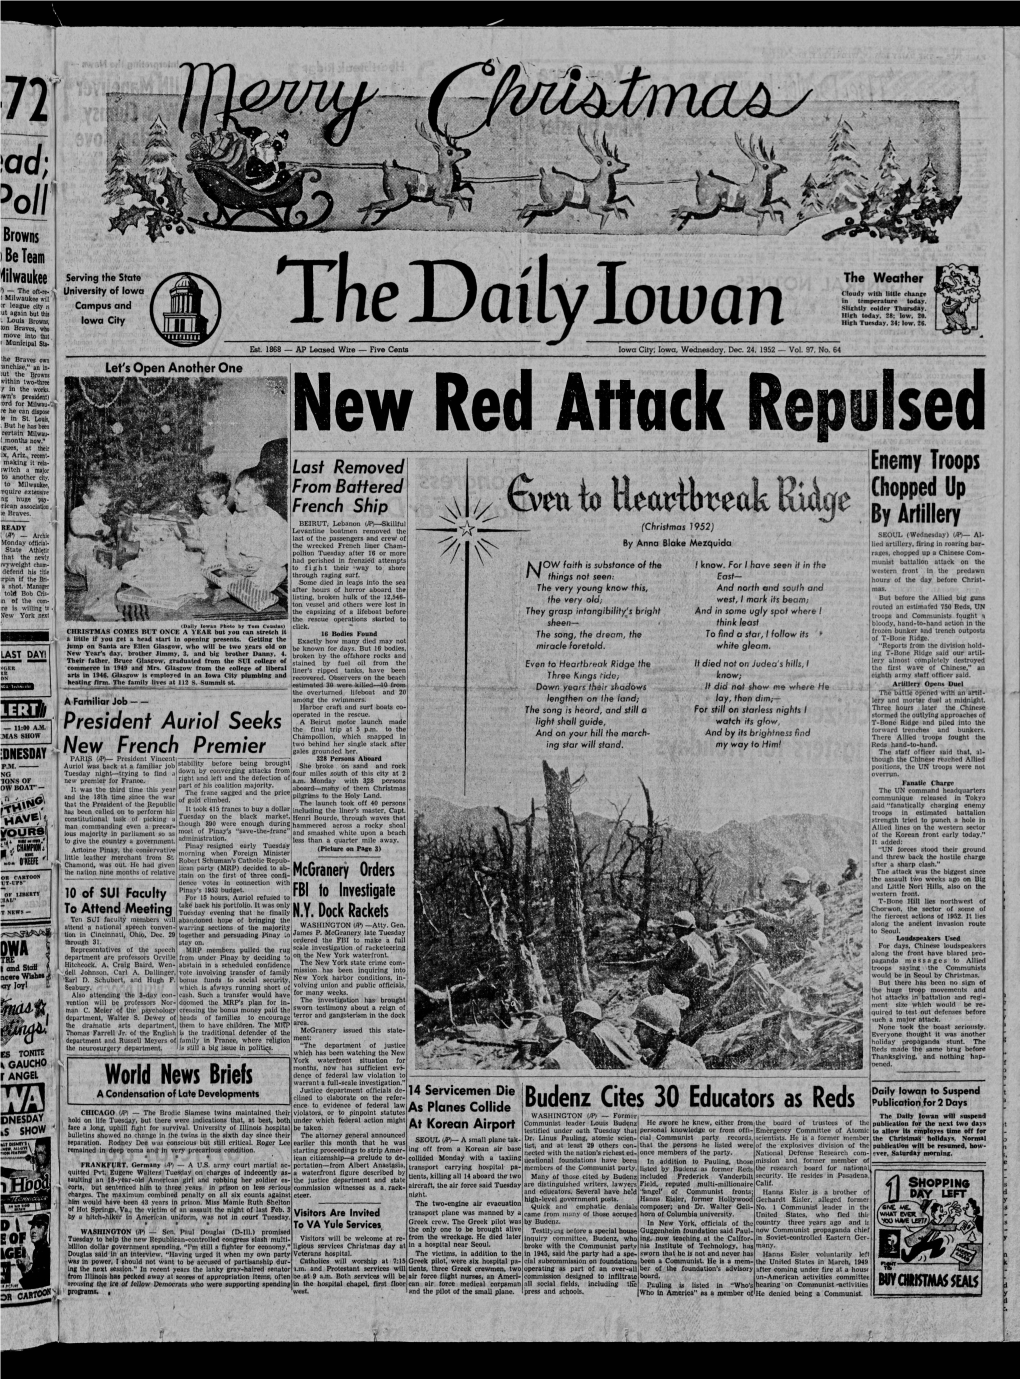 Daily Iowan (Iowa City, Iowa), 1952-12-24